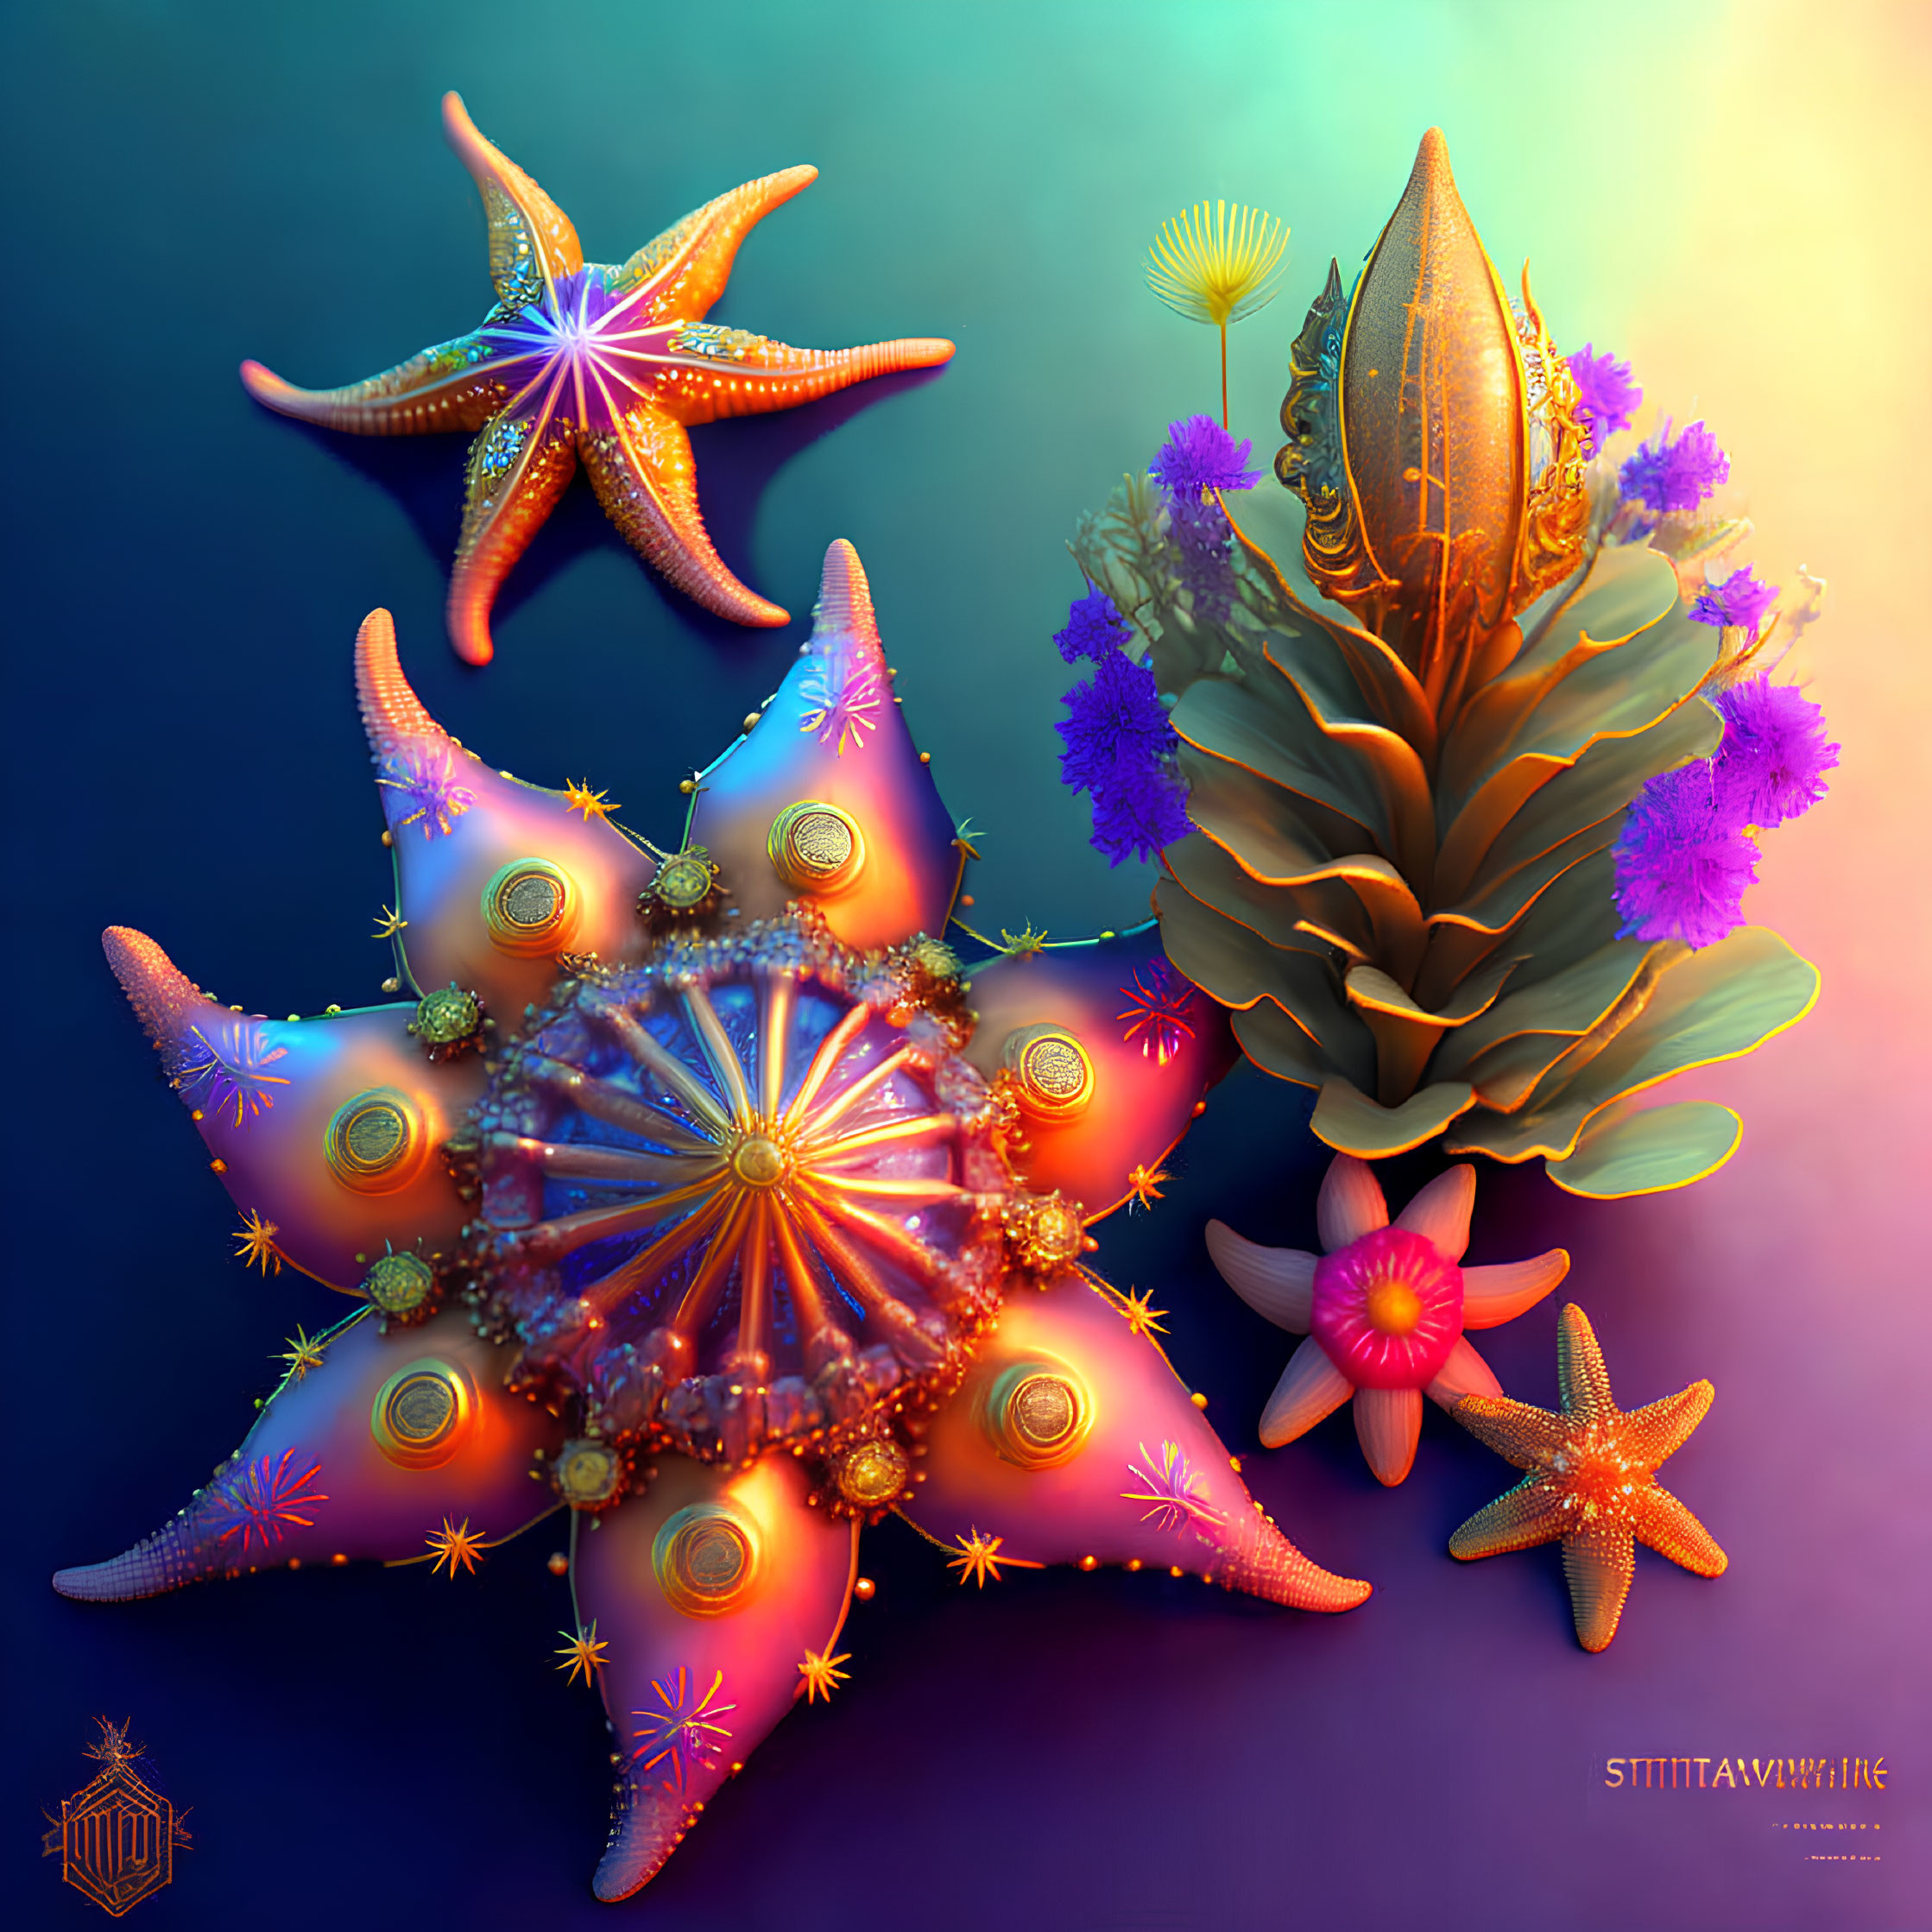 Vibrant digital artwork of starfish and sea plants on blue-orange gradient.